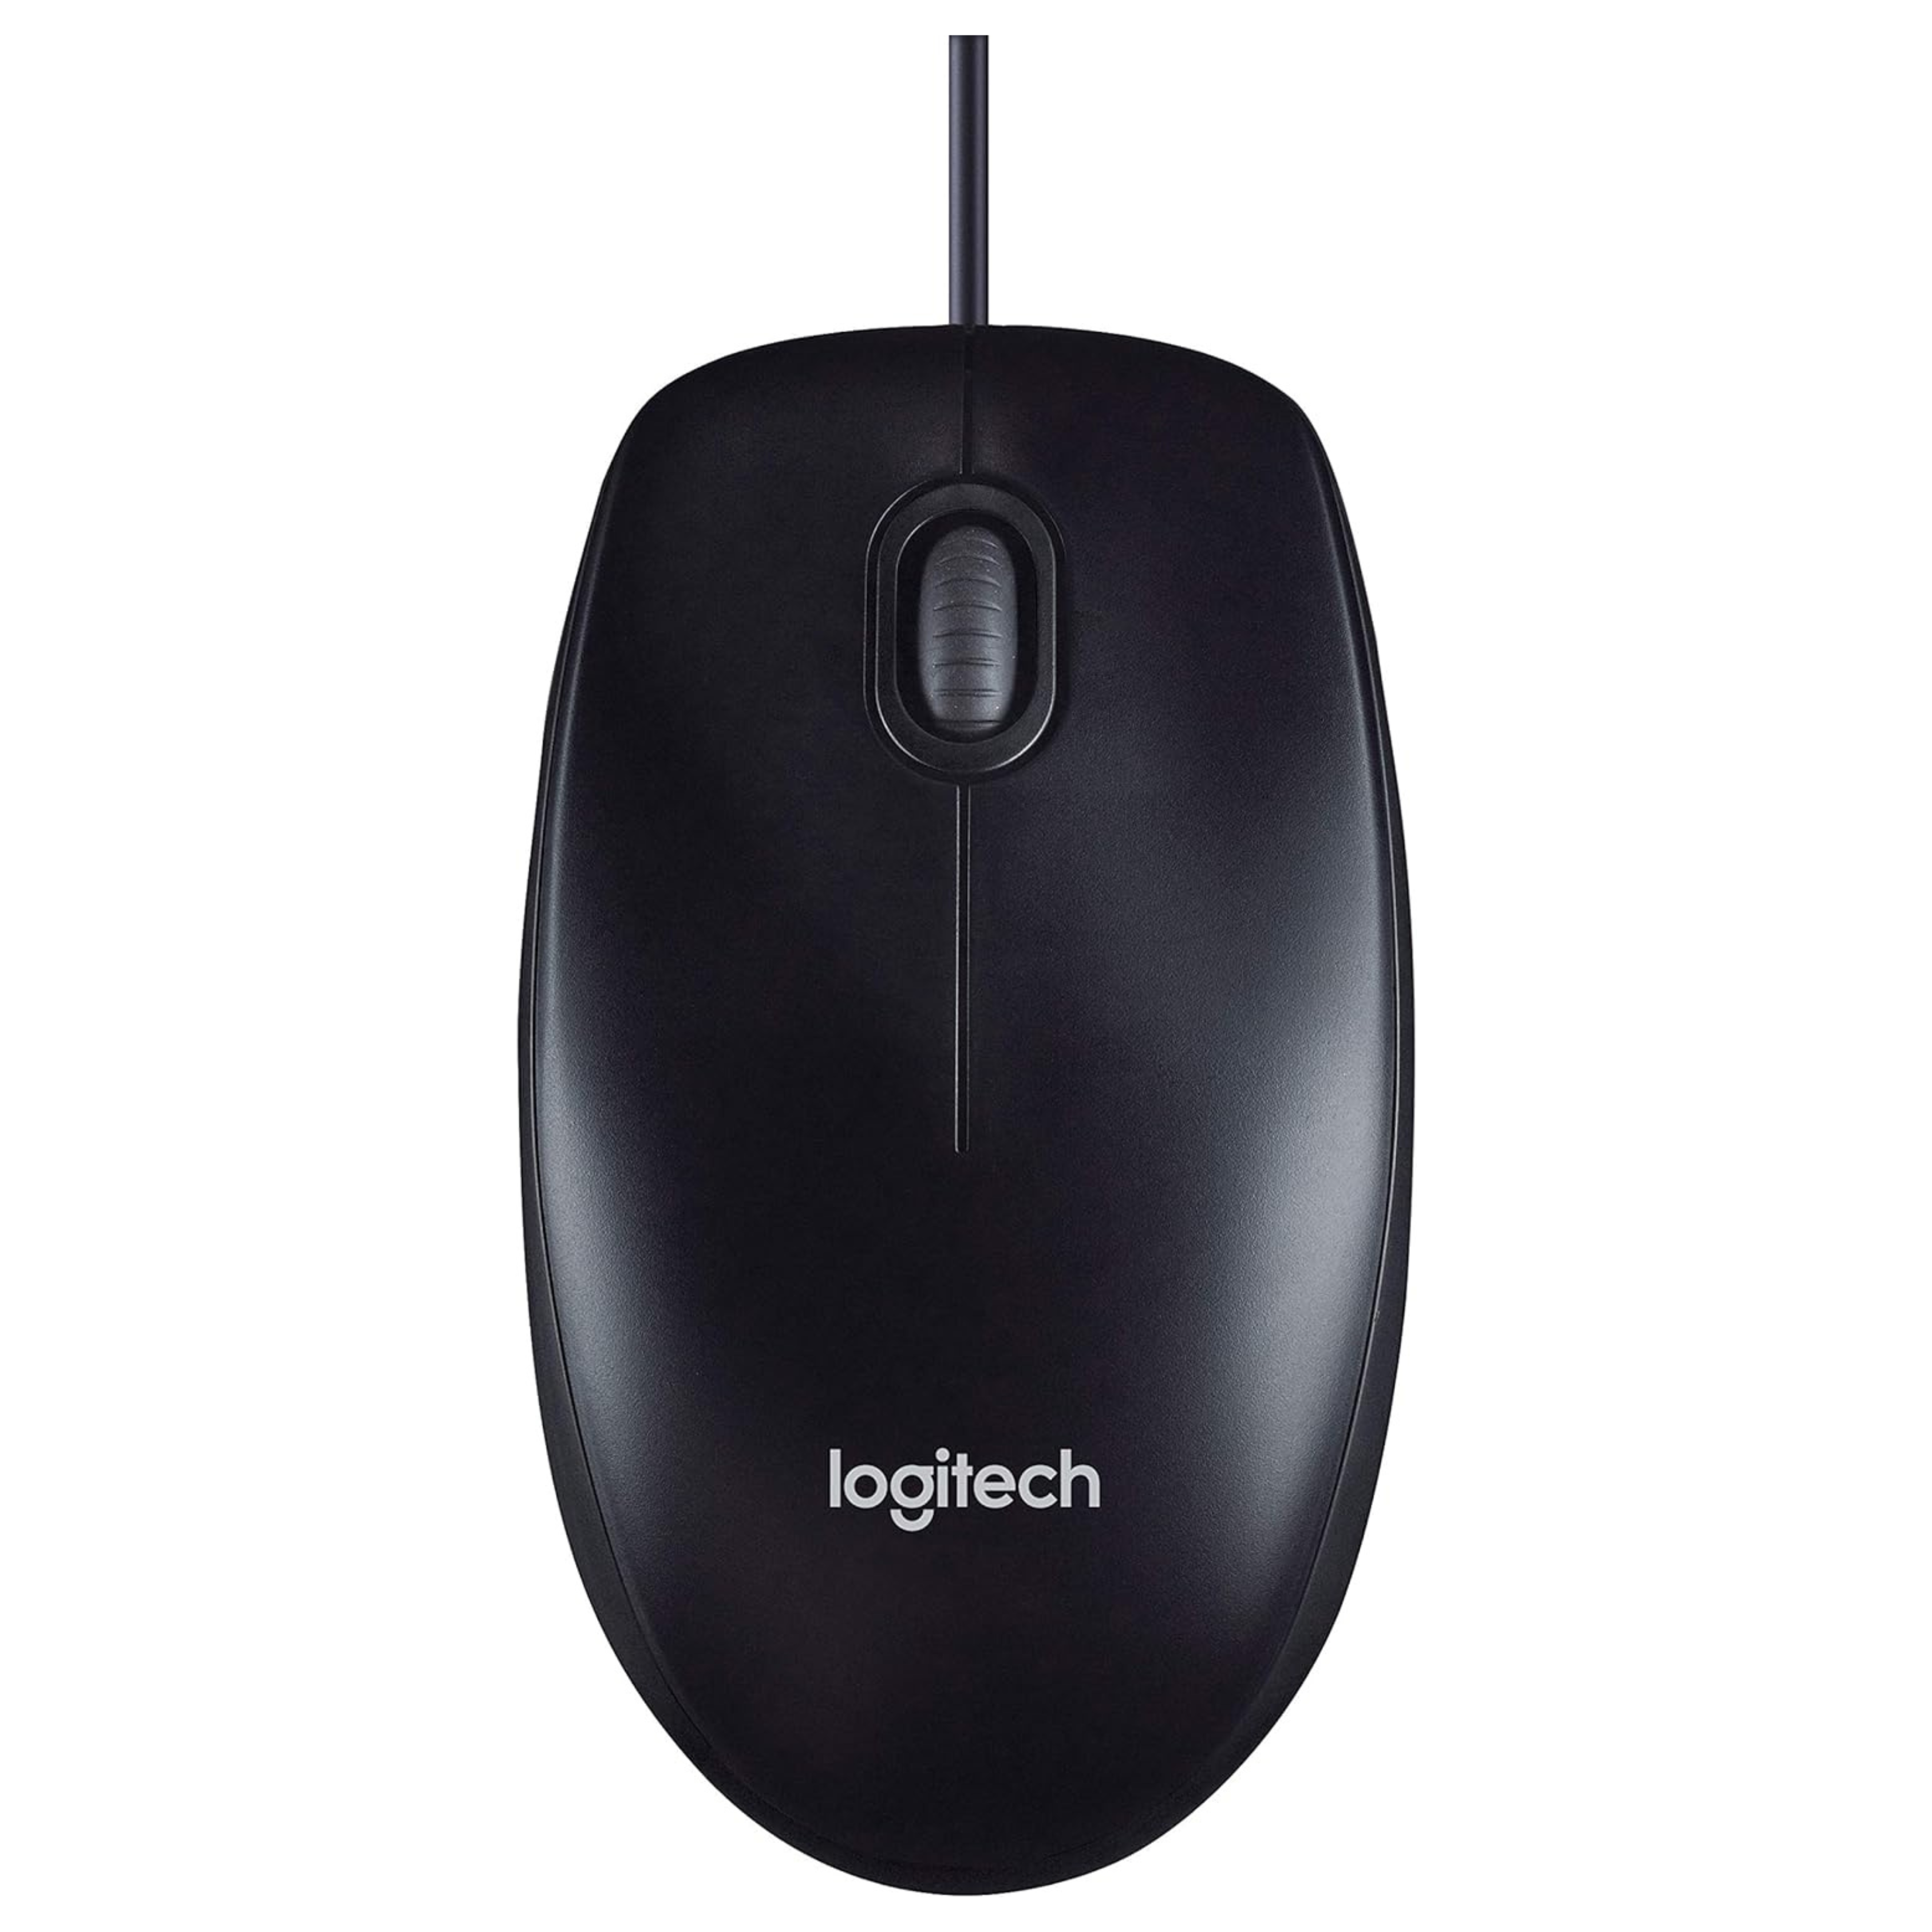 Logitech 910-001793 M90 Mouse - Black